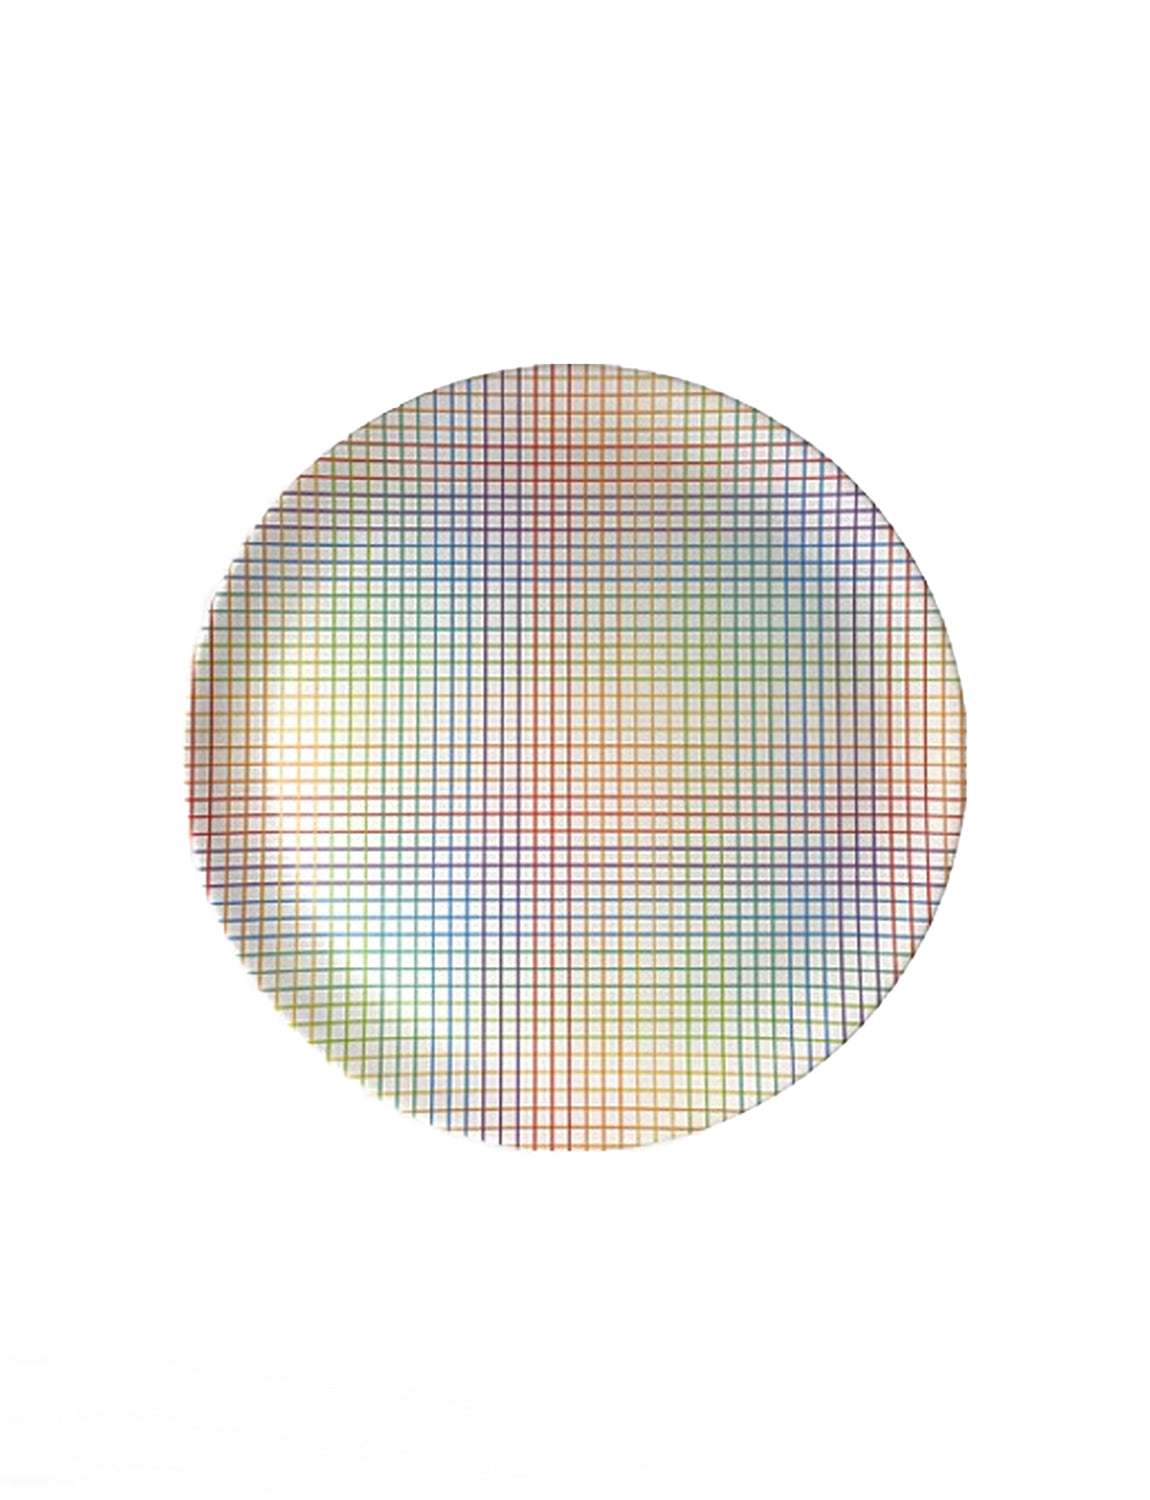 Xenia Taler Rainbow Grid Dinner Plate 10"